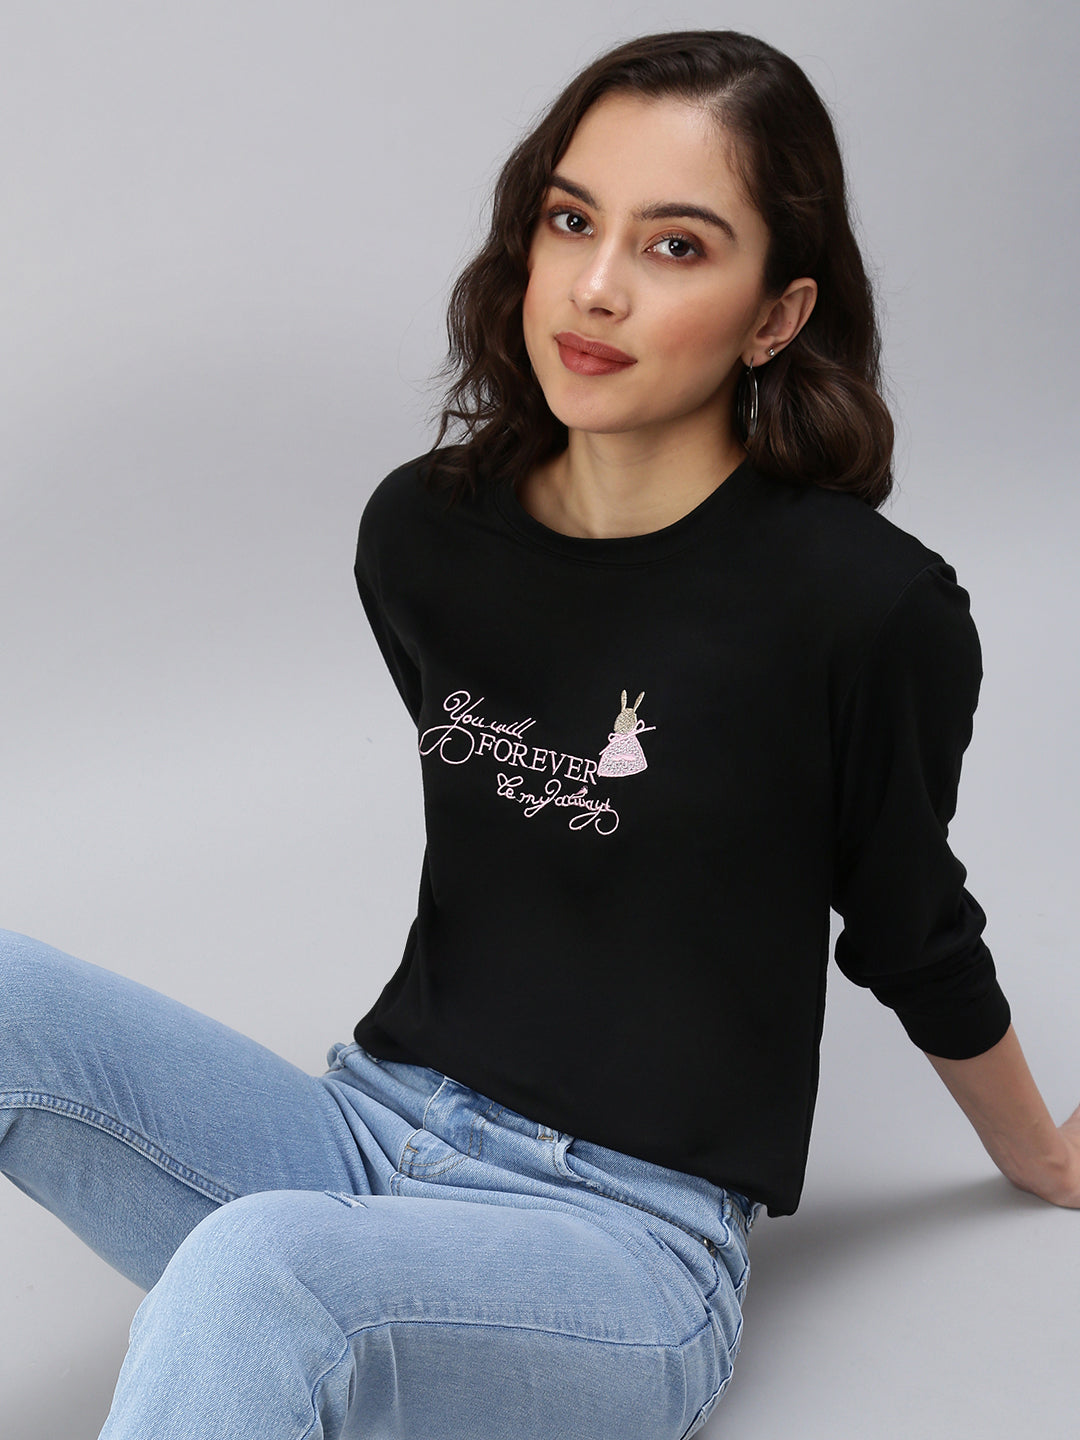 Women's Black Solid SweatShirt